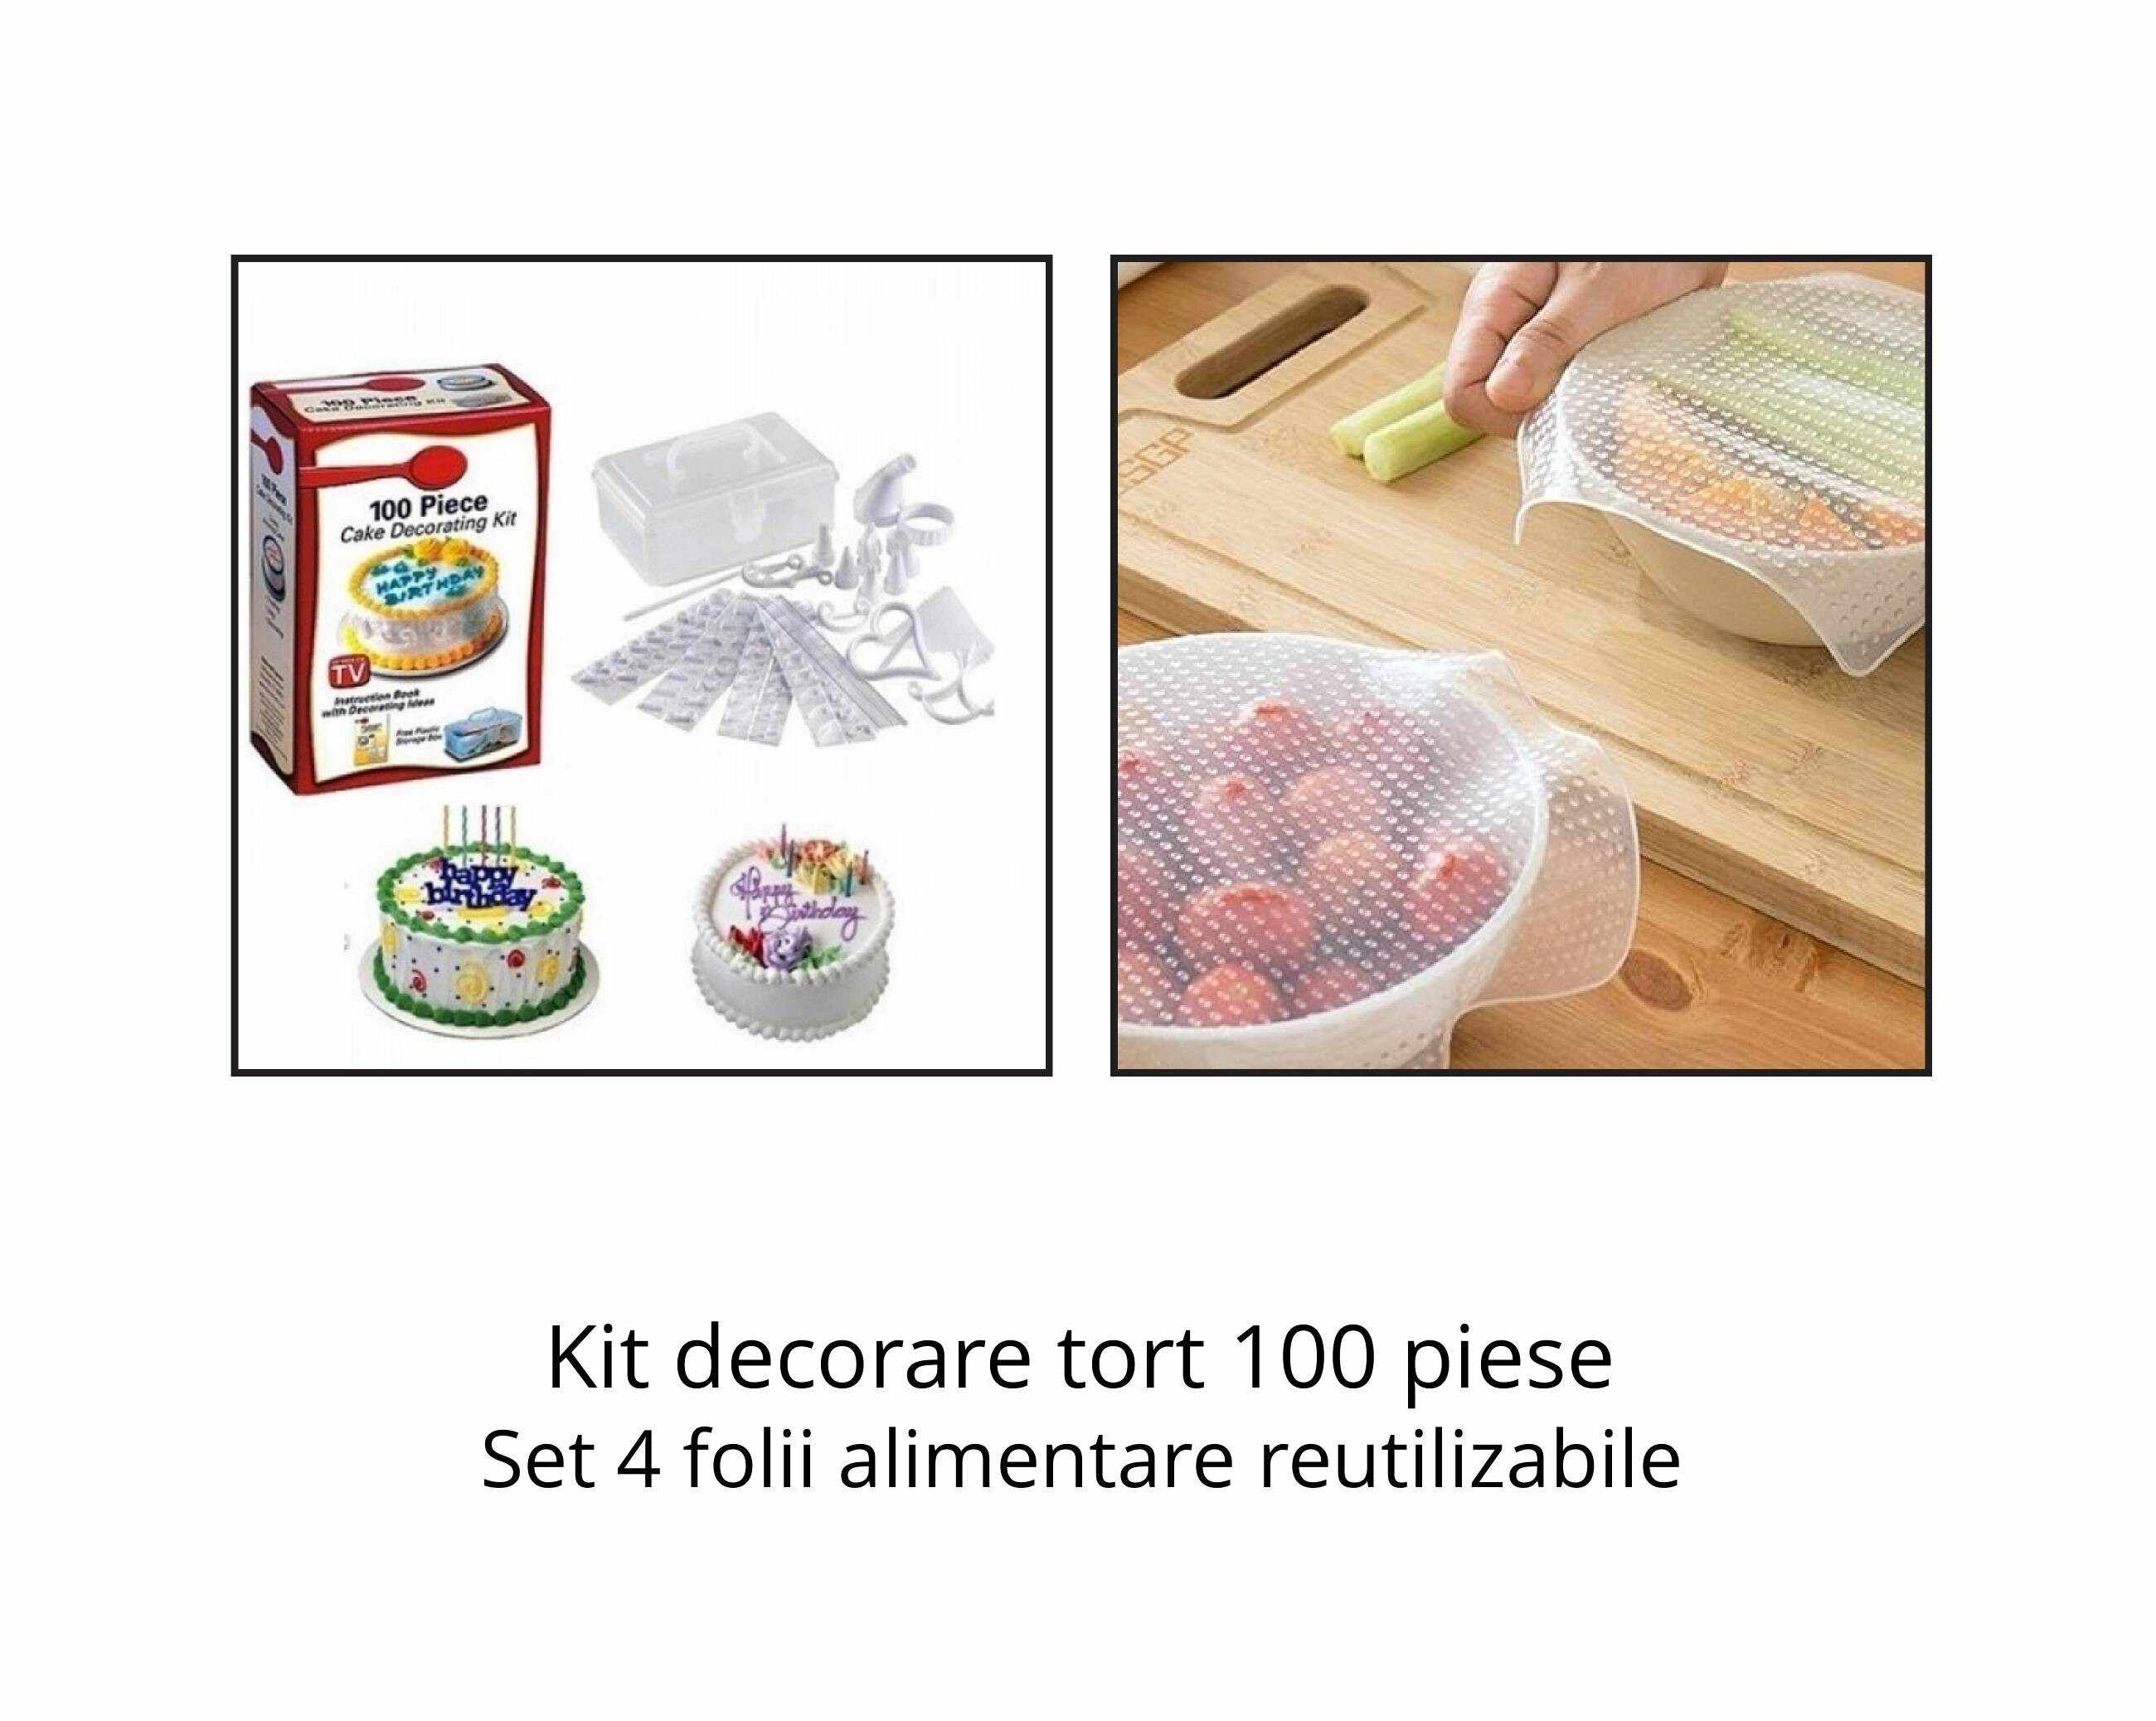 Kit decorare tort 100 piese + Set 4 folii alimentare reutilizabile